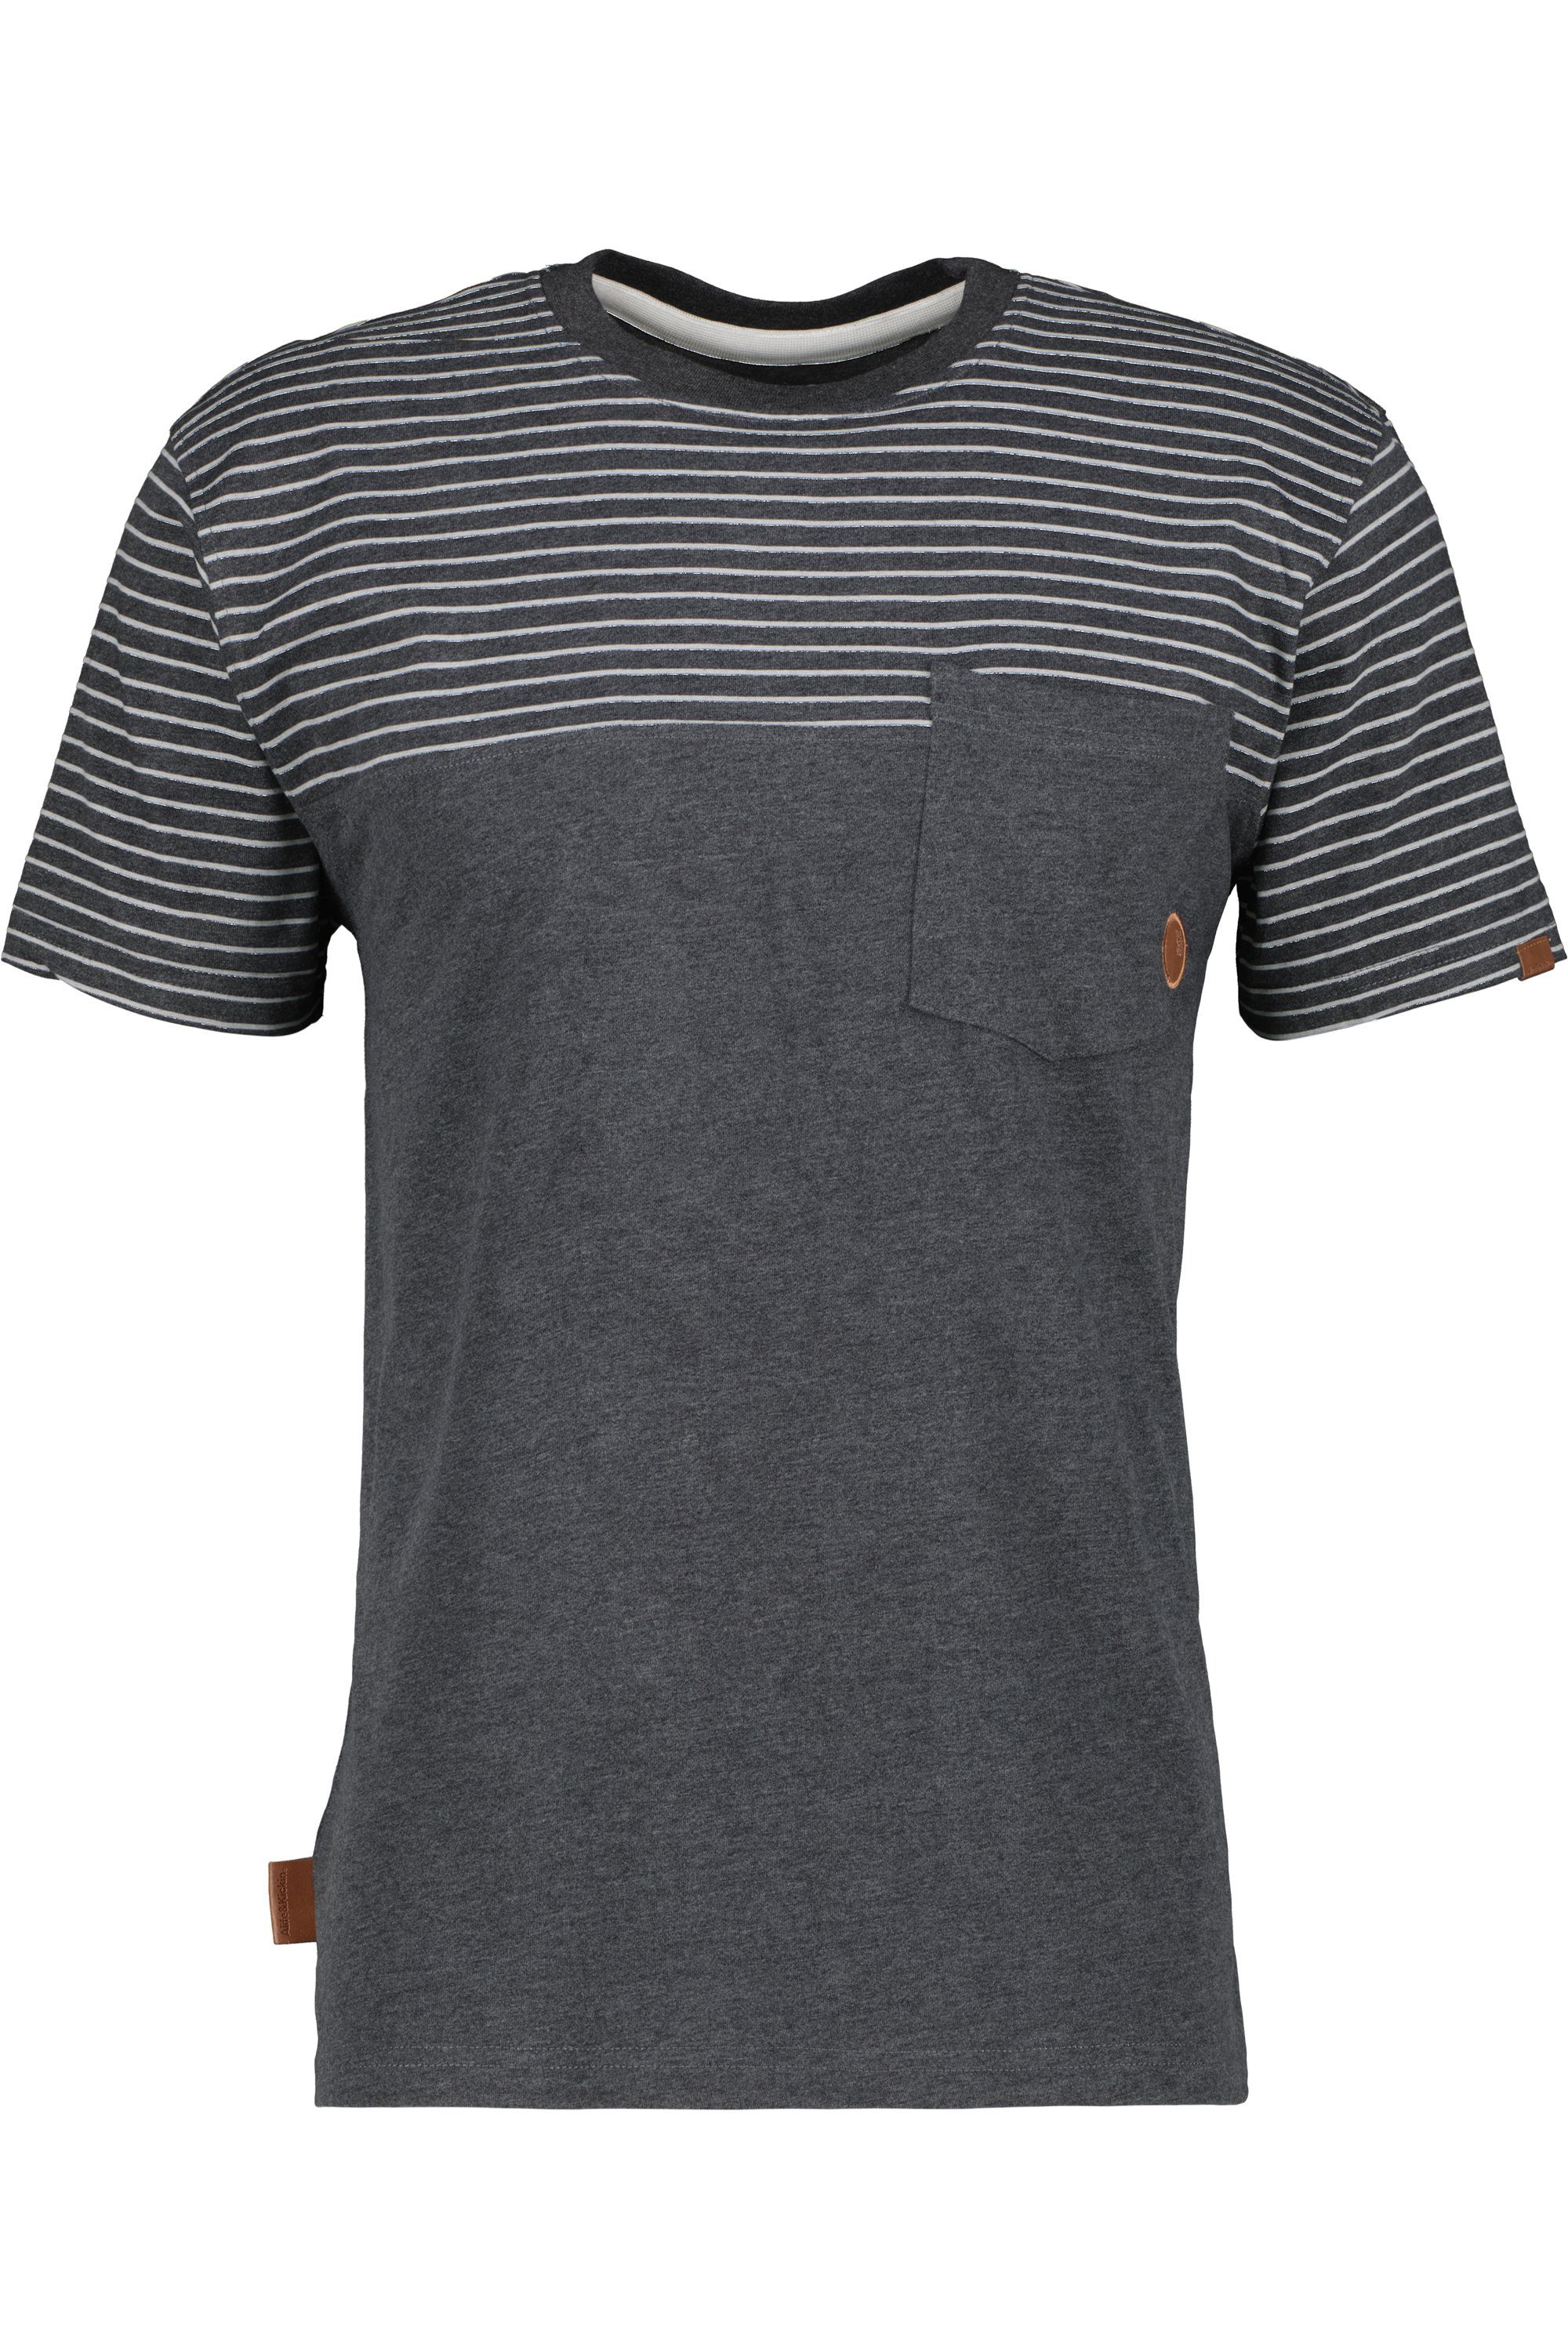 Alife & T-Shirt Shirt LeopoldAK T-Shirt moonless Z Kickin melange Herren